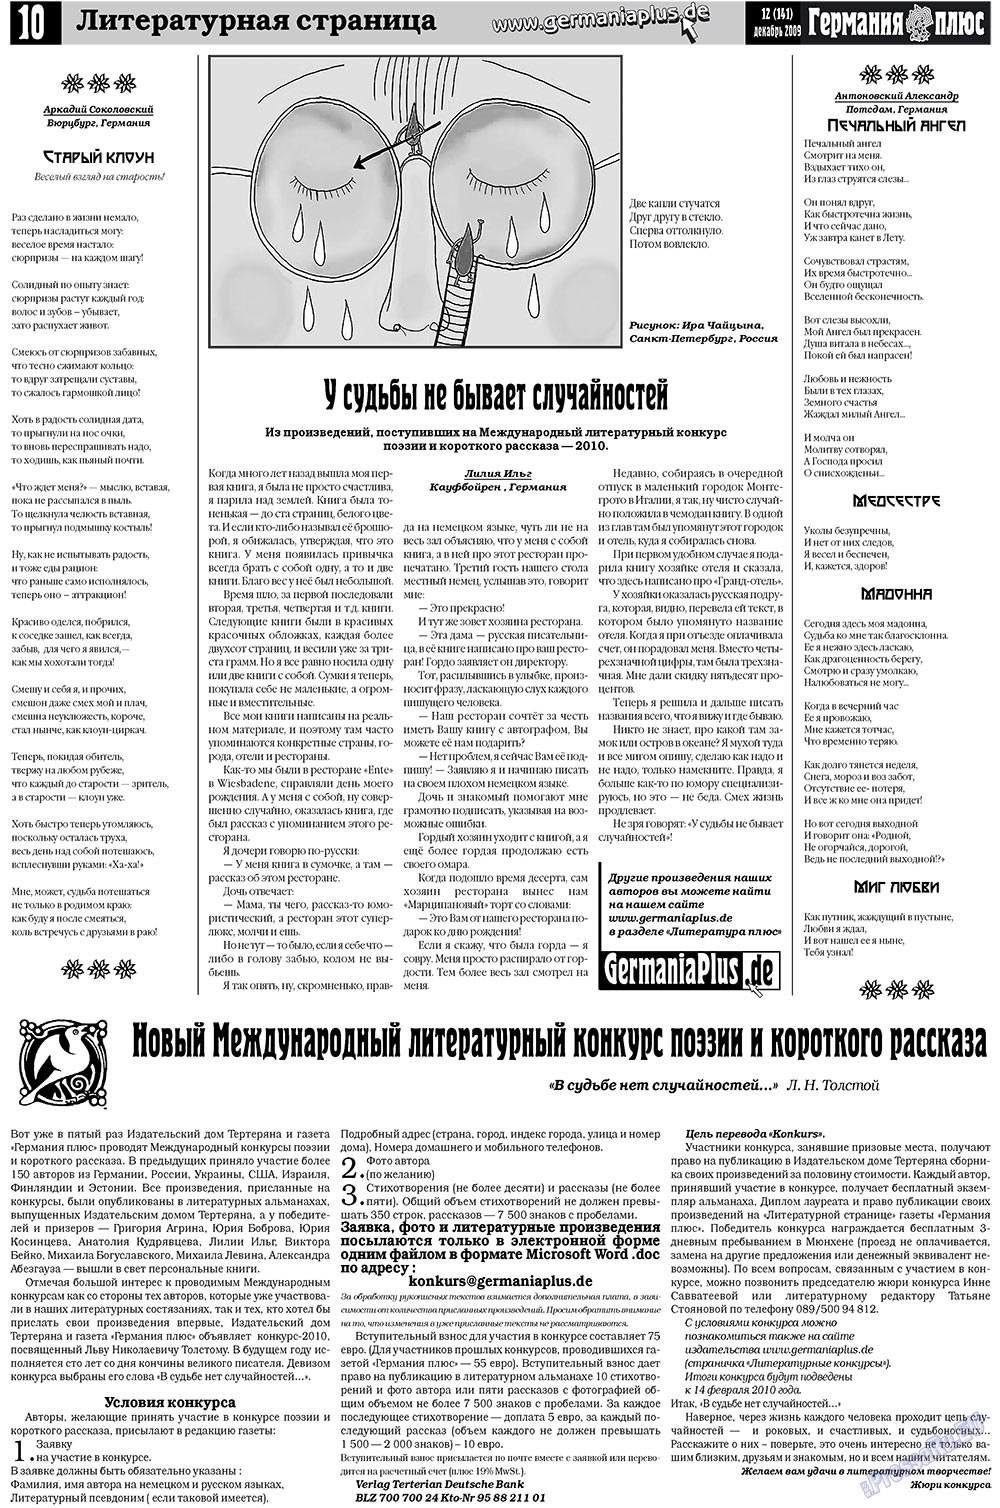 Германия плюс, газета. 2009 №12 стр.10